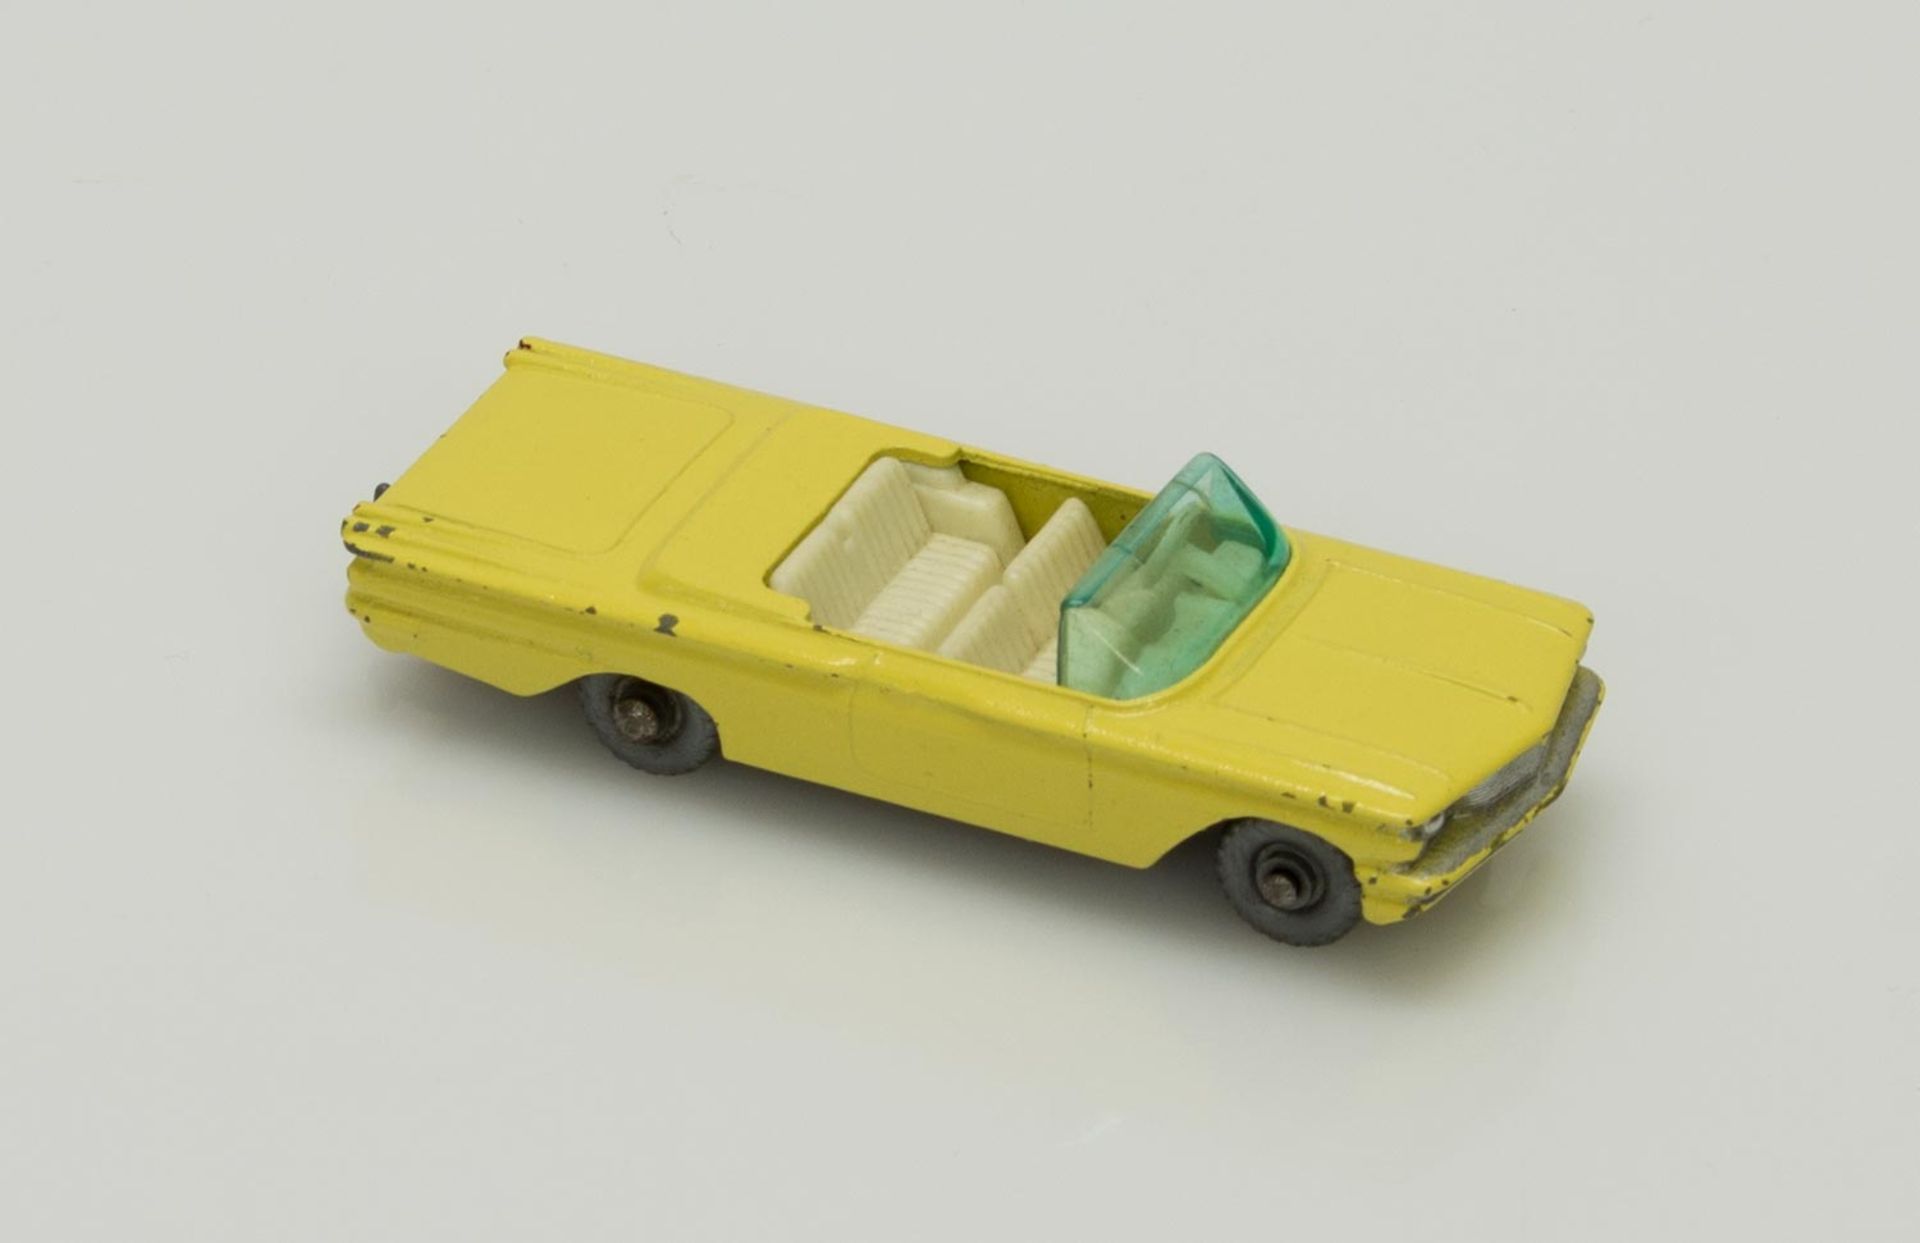 Matchbox PontiacMatchbox No. 39, Pontiac Convertible, Gelb, 1961-66, Lesney Produkts & Co Ltd.